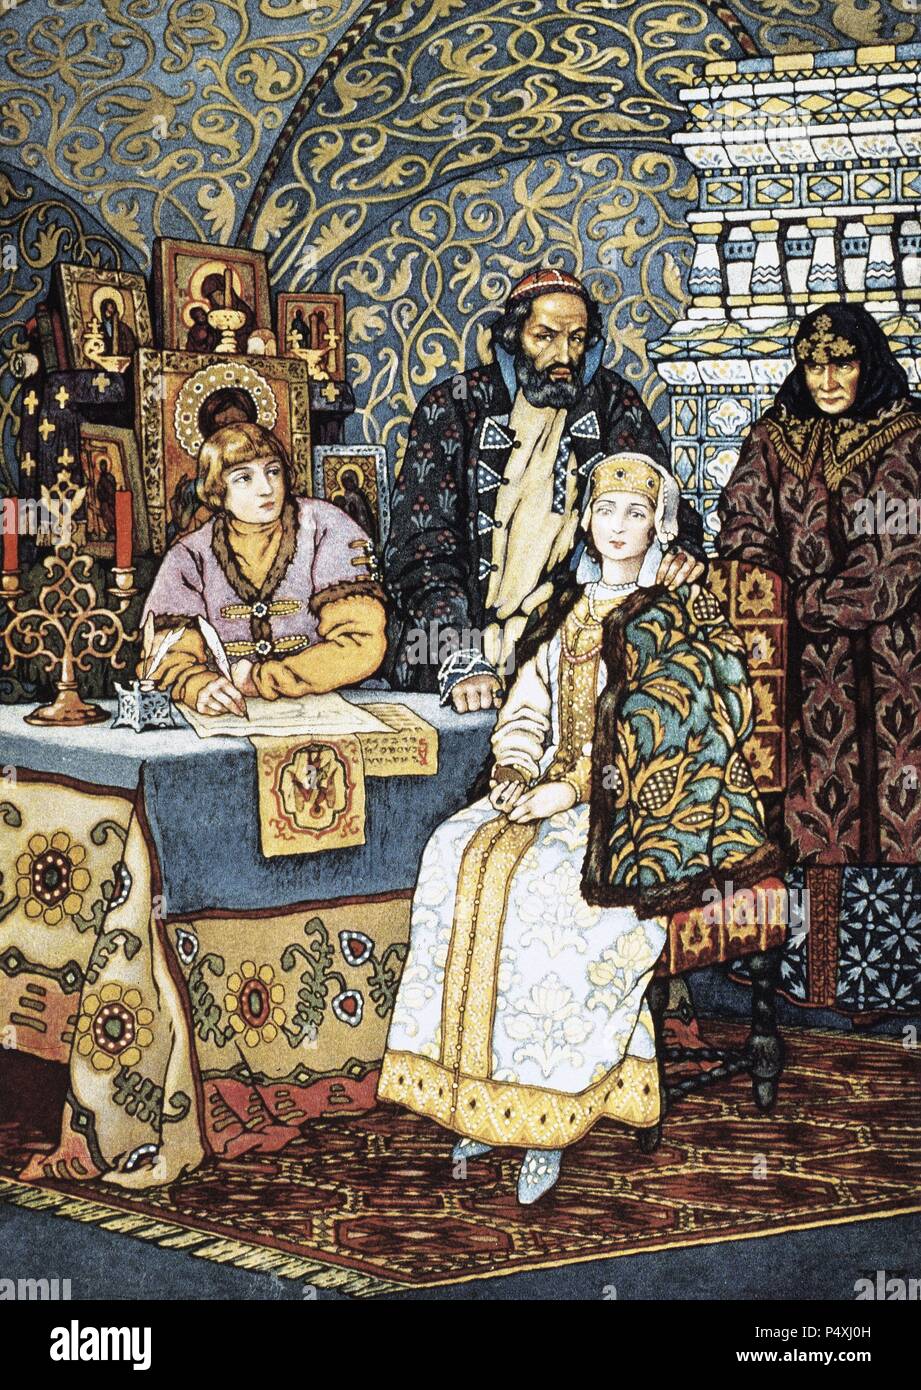 Alexander Puschkin (1799-1837). Russische Autor der romantischen Epoche. Boris Godunov, 1825, Drama. Abbildung von Boris Zworykine. Pari s, 1927. Stockfoto